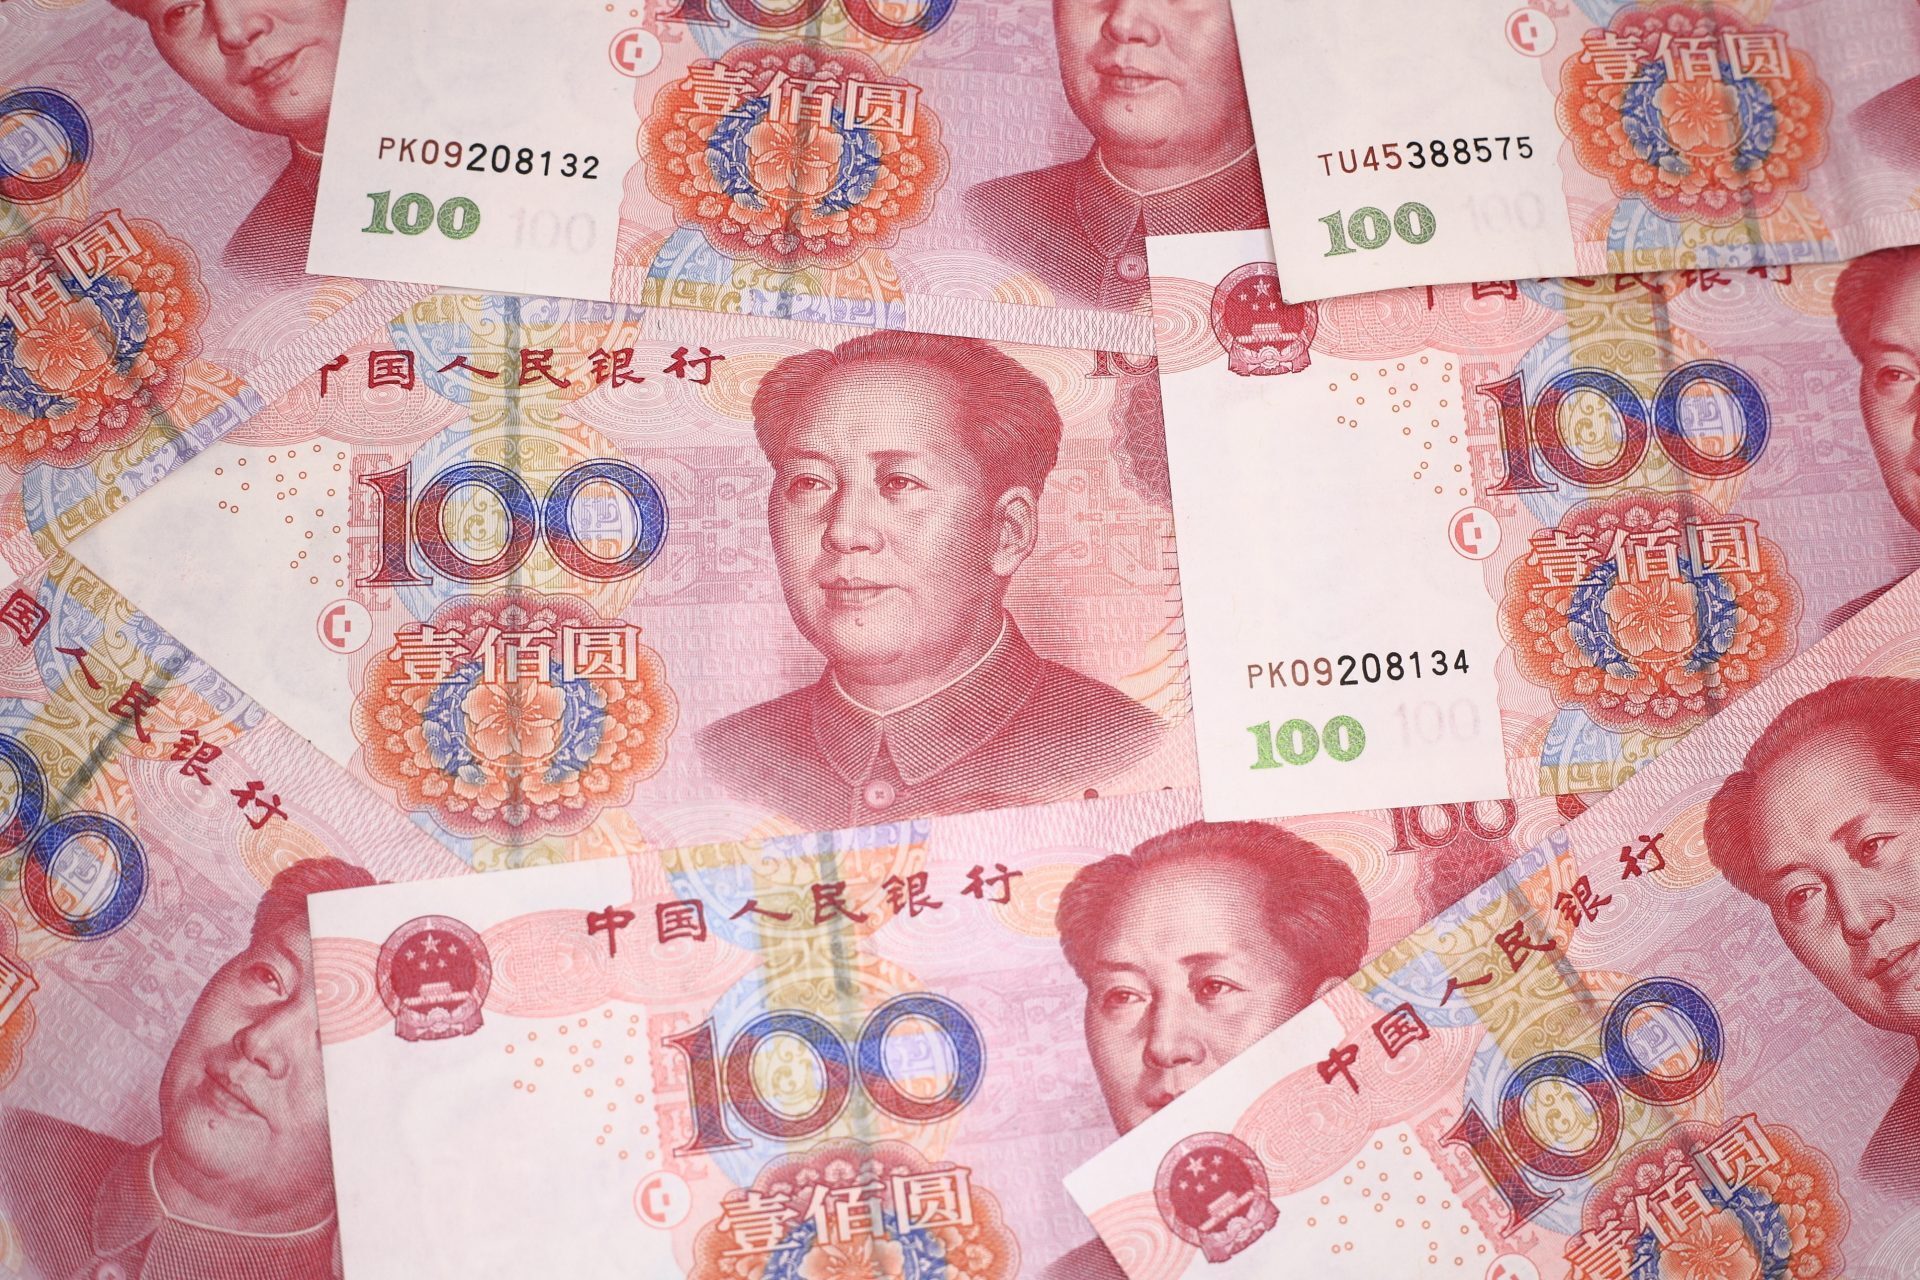 Китайские деньги картинки. Юань валюта Тайланд. RMB валюта какой страны. Китайские деньги картинки которые дарят на новый год. Китайские деньги в рублях перевести